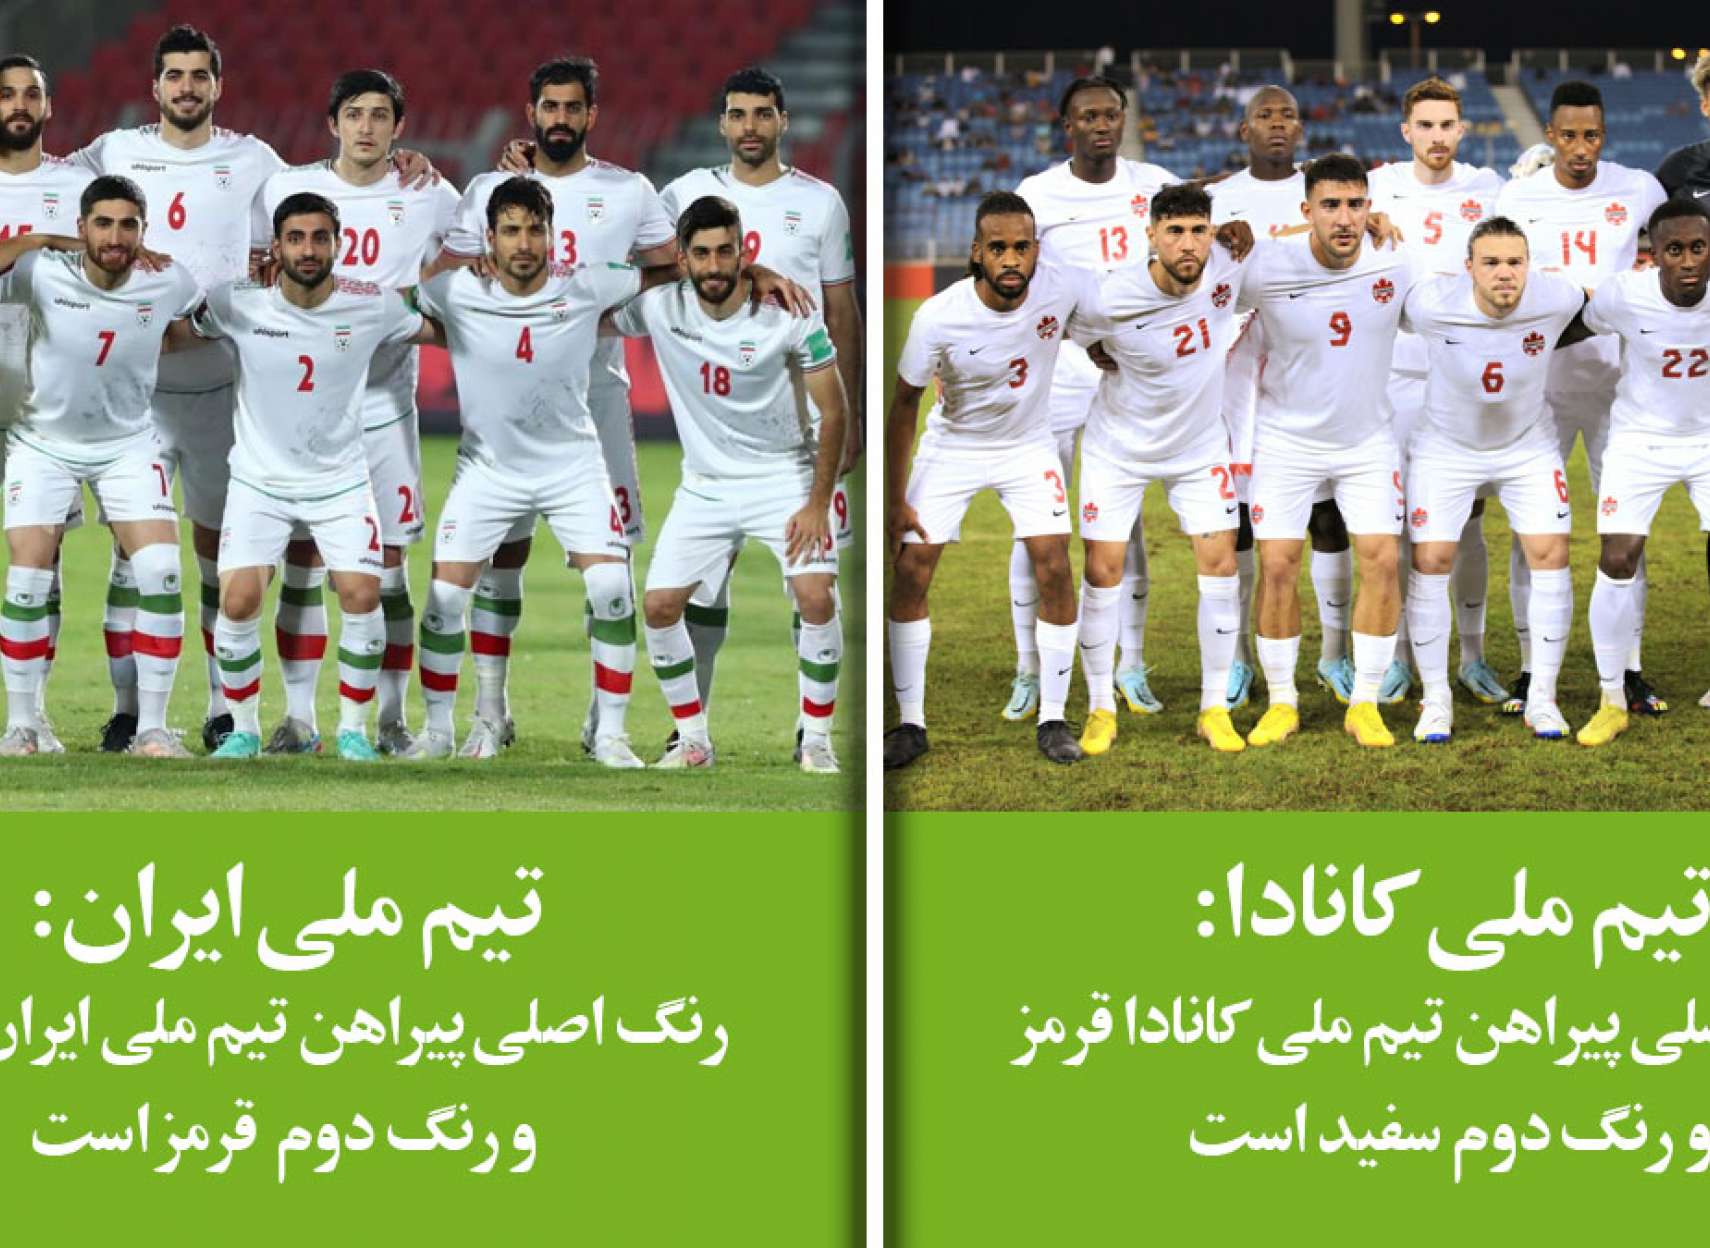 خبر-کانادا-فوری-لیست-نهایی-دو-تیم-ملی-فوتبال-ایران-و-کانادا-برای-جام-جهانی-قطر-اعلان-شدند